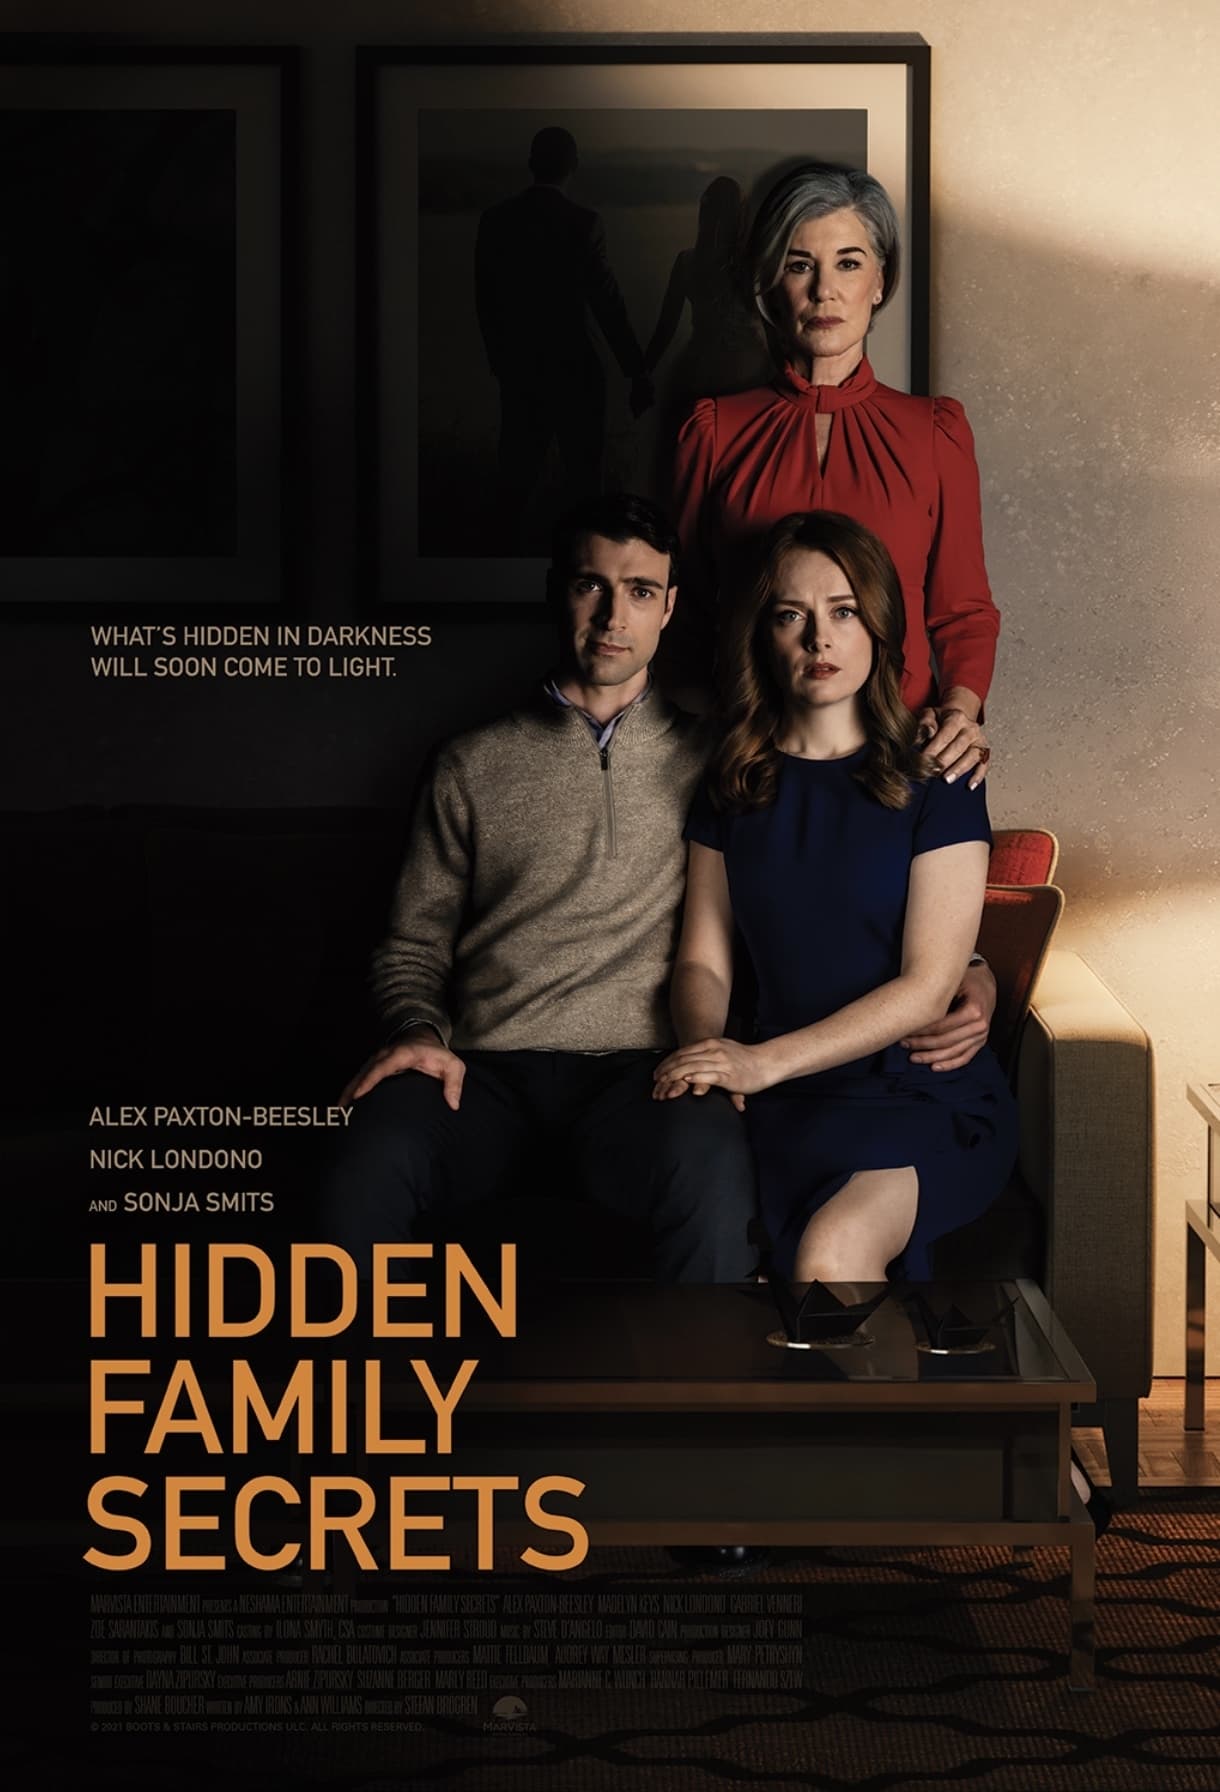 hidden-family-secrets-comments-2021